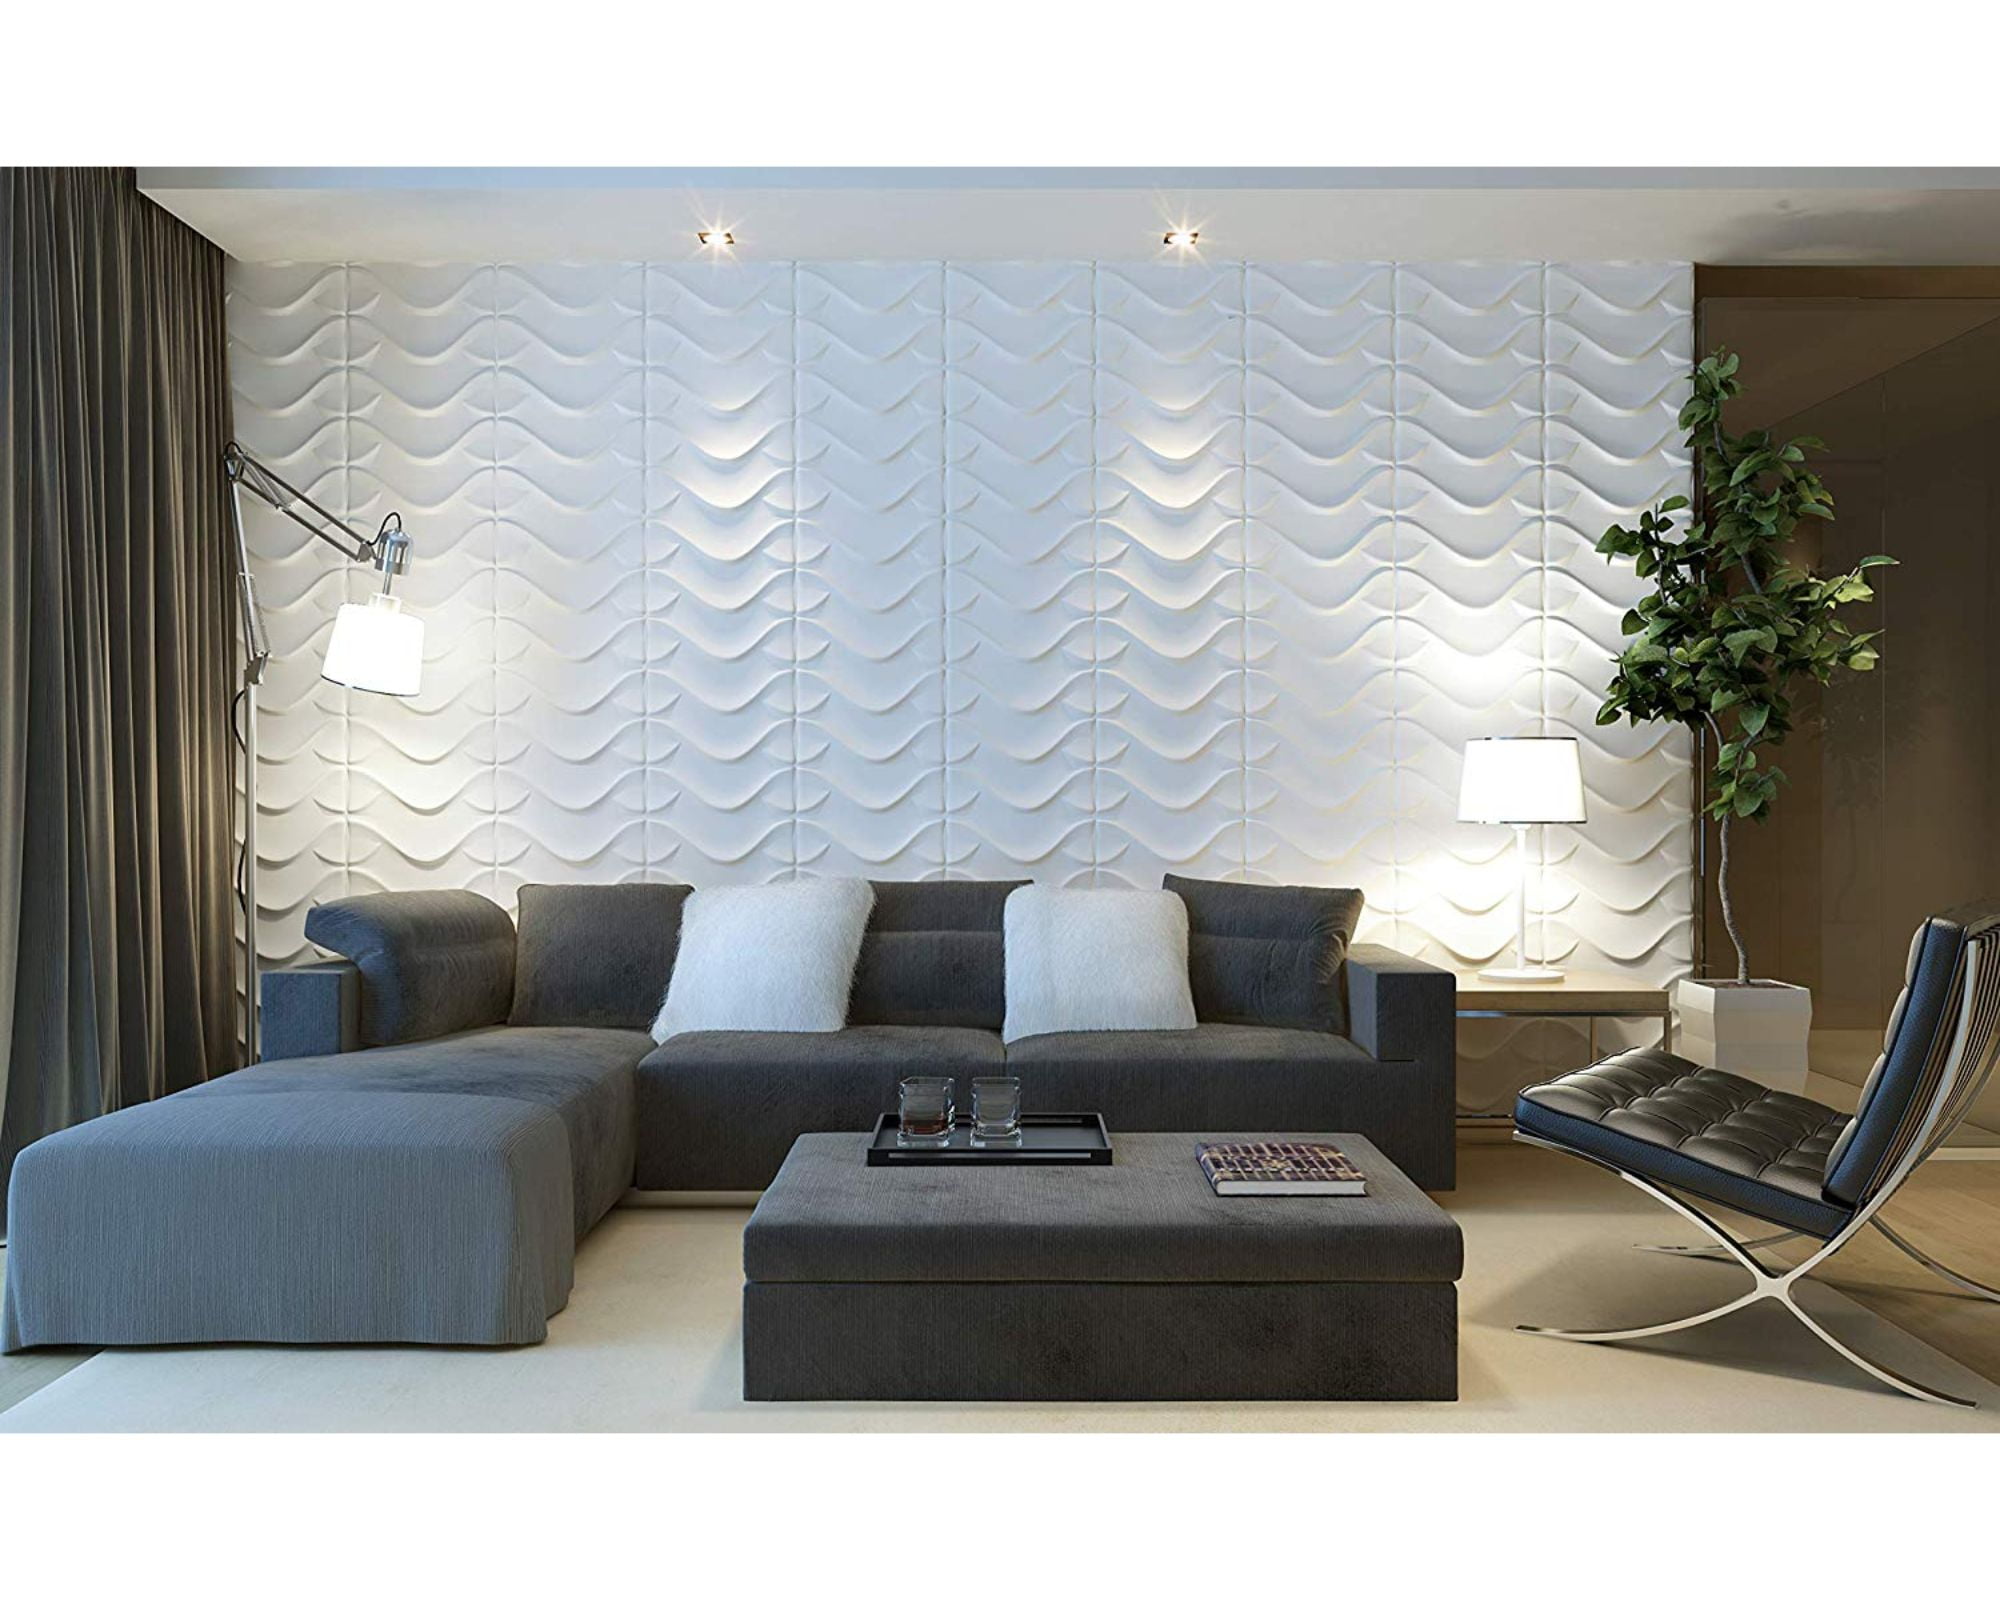 decorative 3d wall panels living room